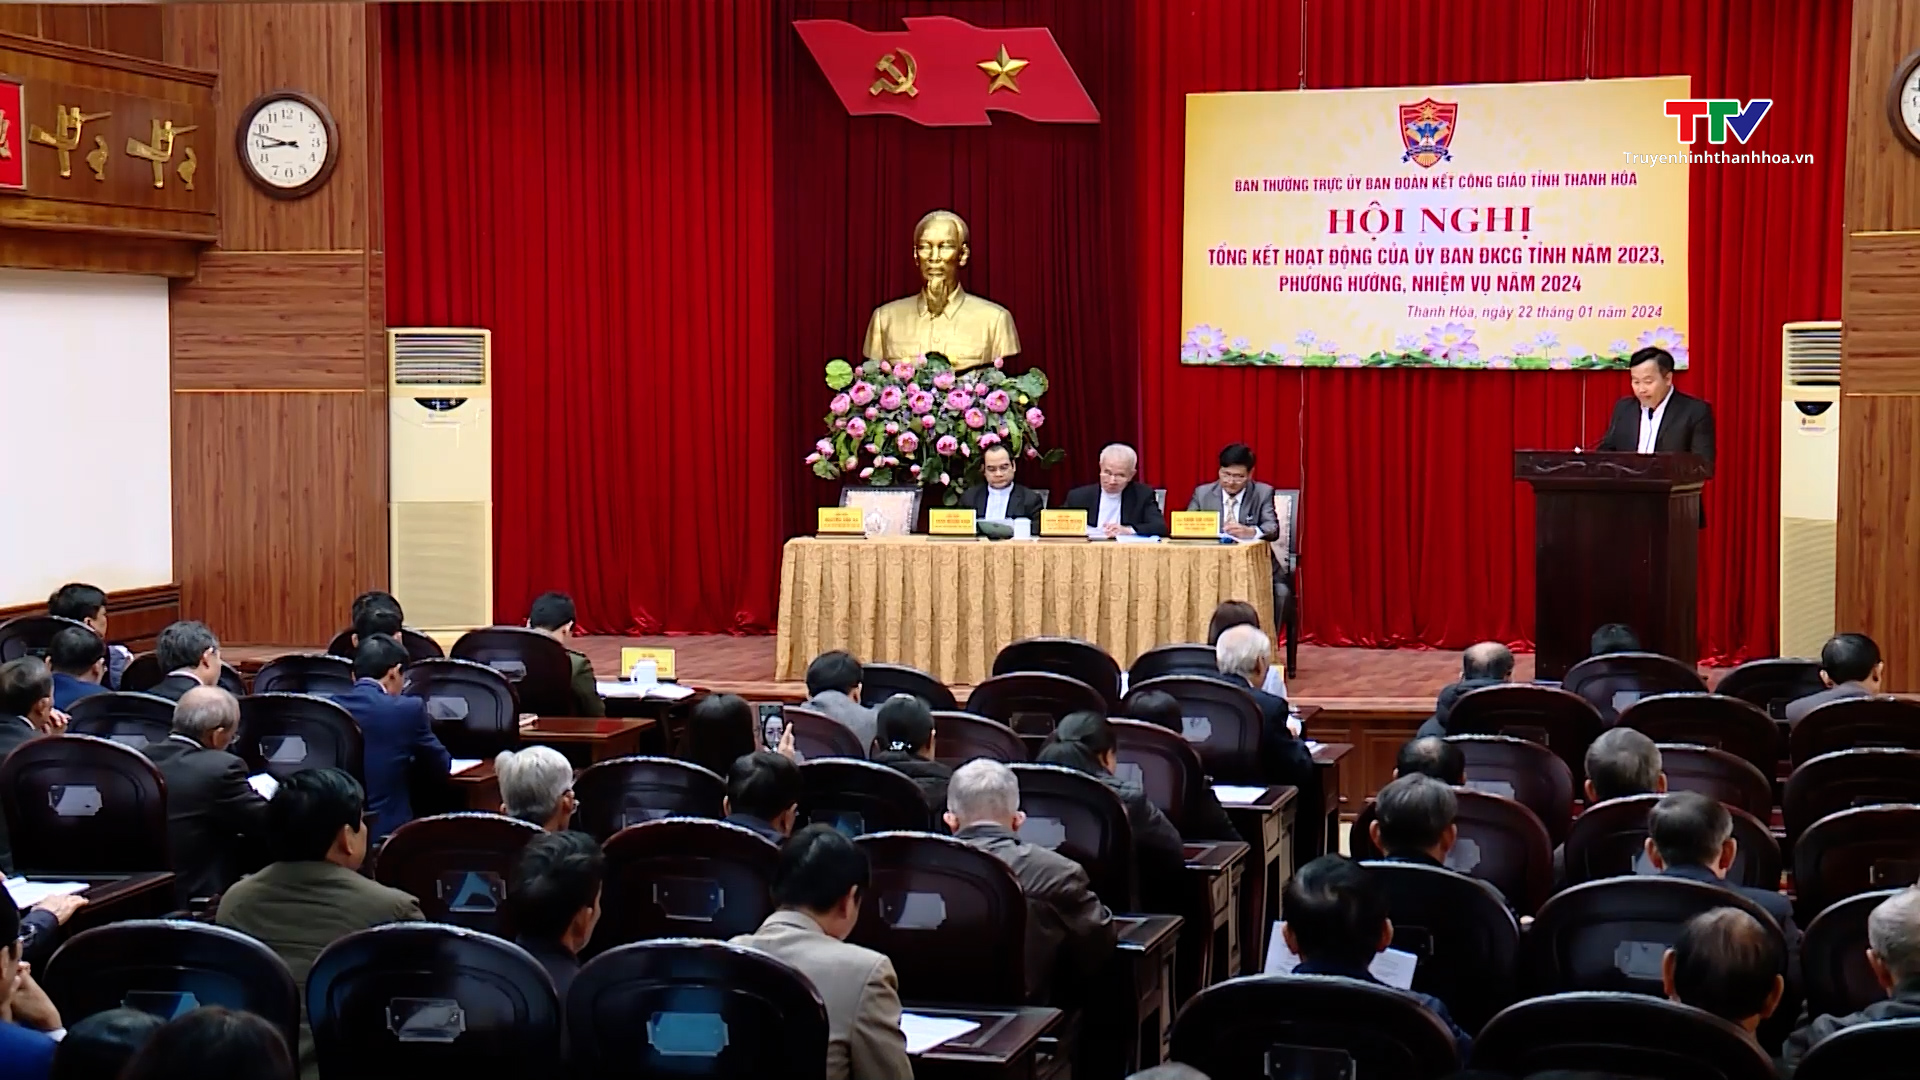 Ủy ban Đoàn kết Công giáo tỉnh Thanh Hóa tổng kết hoạt động năm 2023- Ảnh 3.